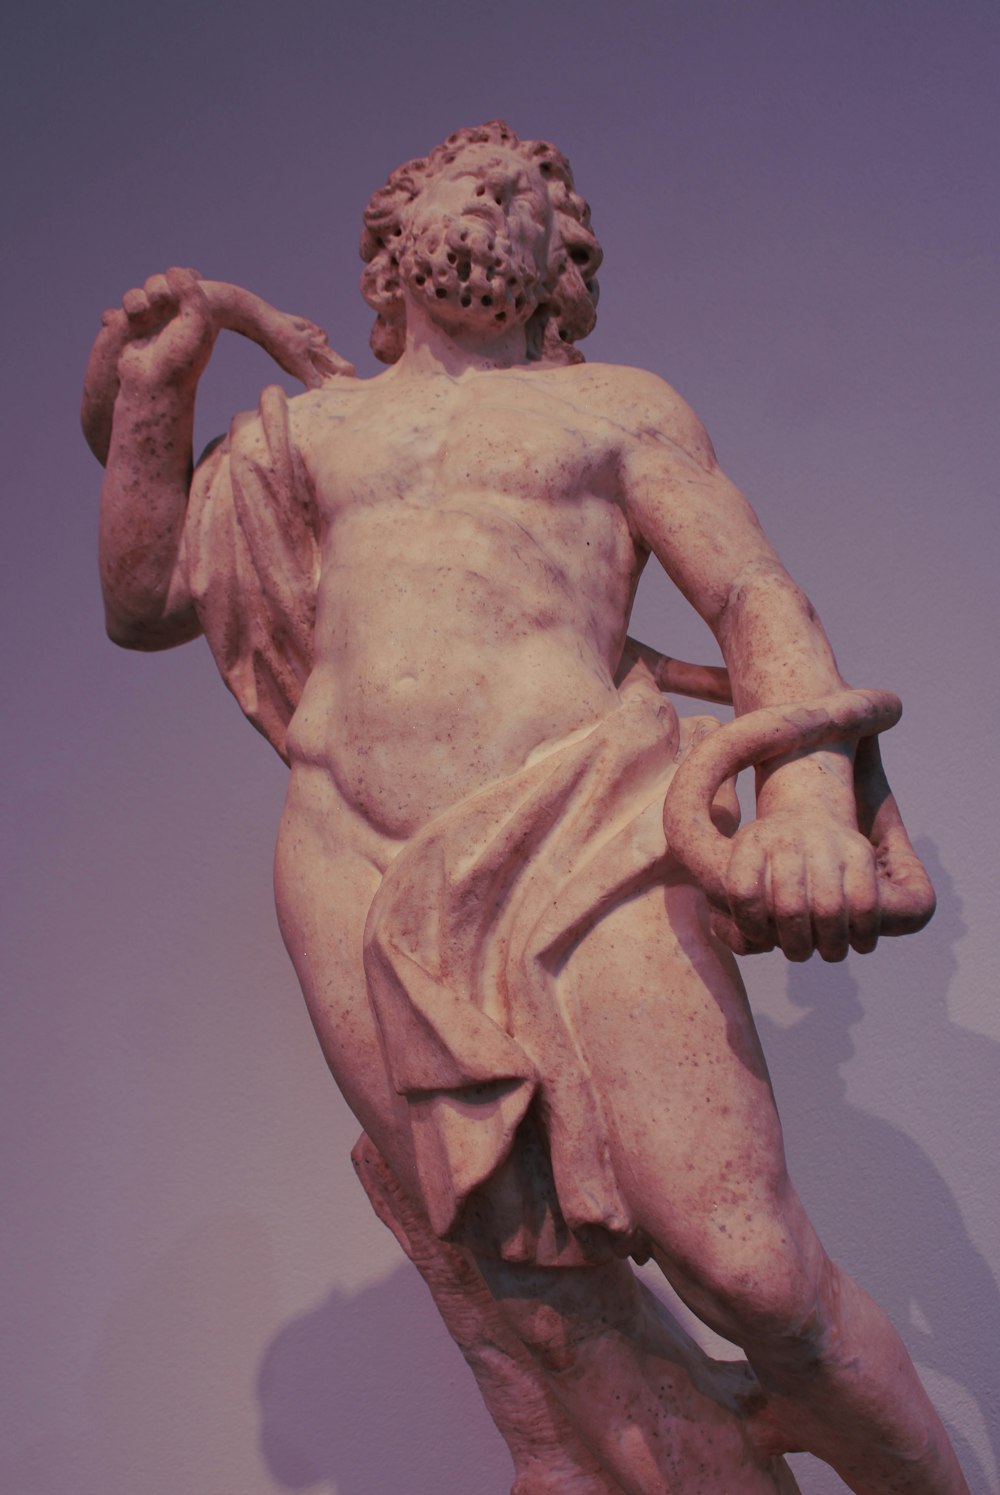 a sculpture of a naked man